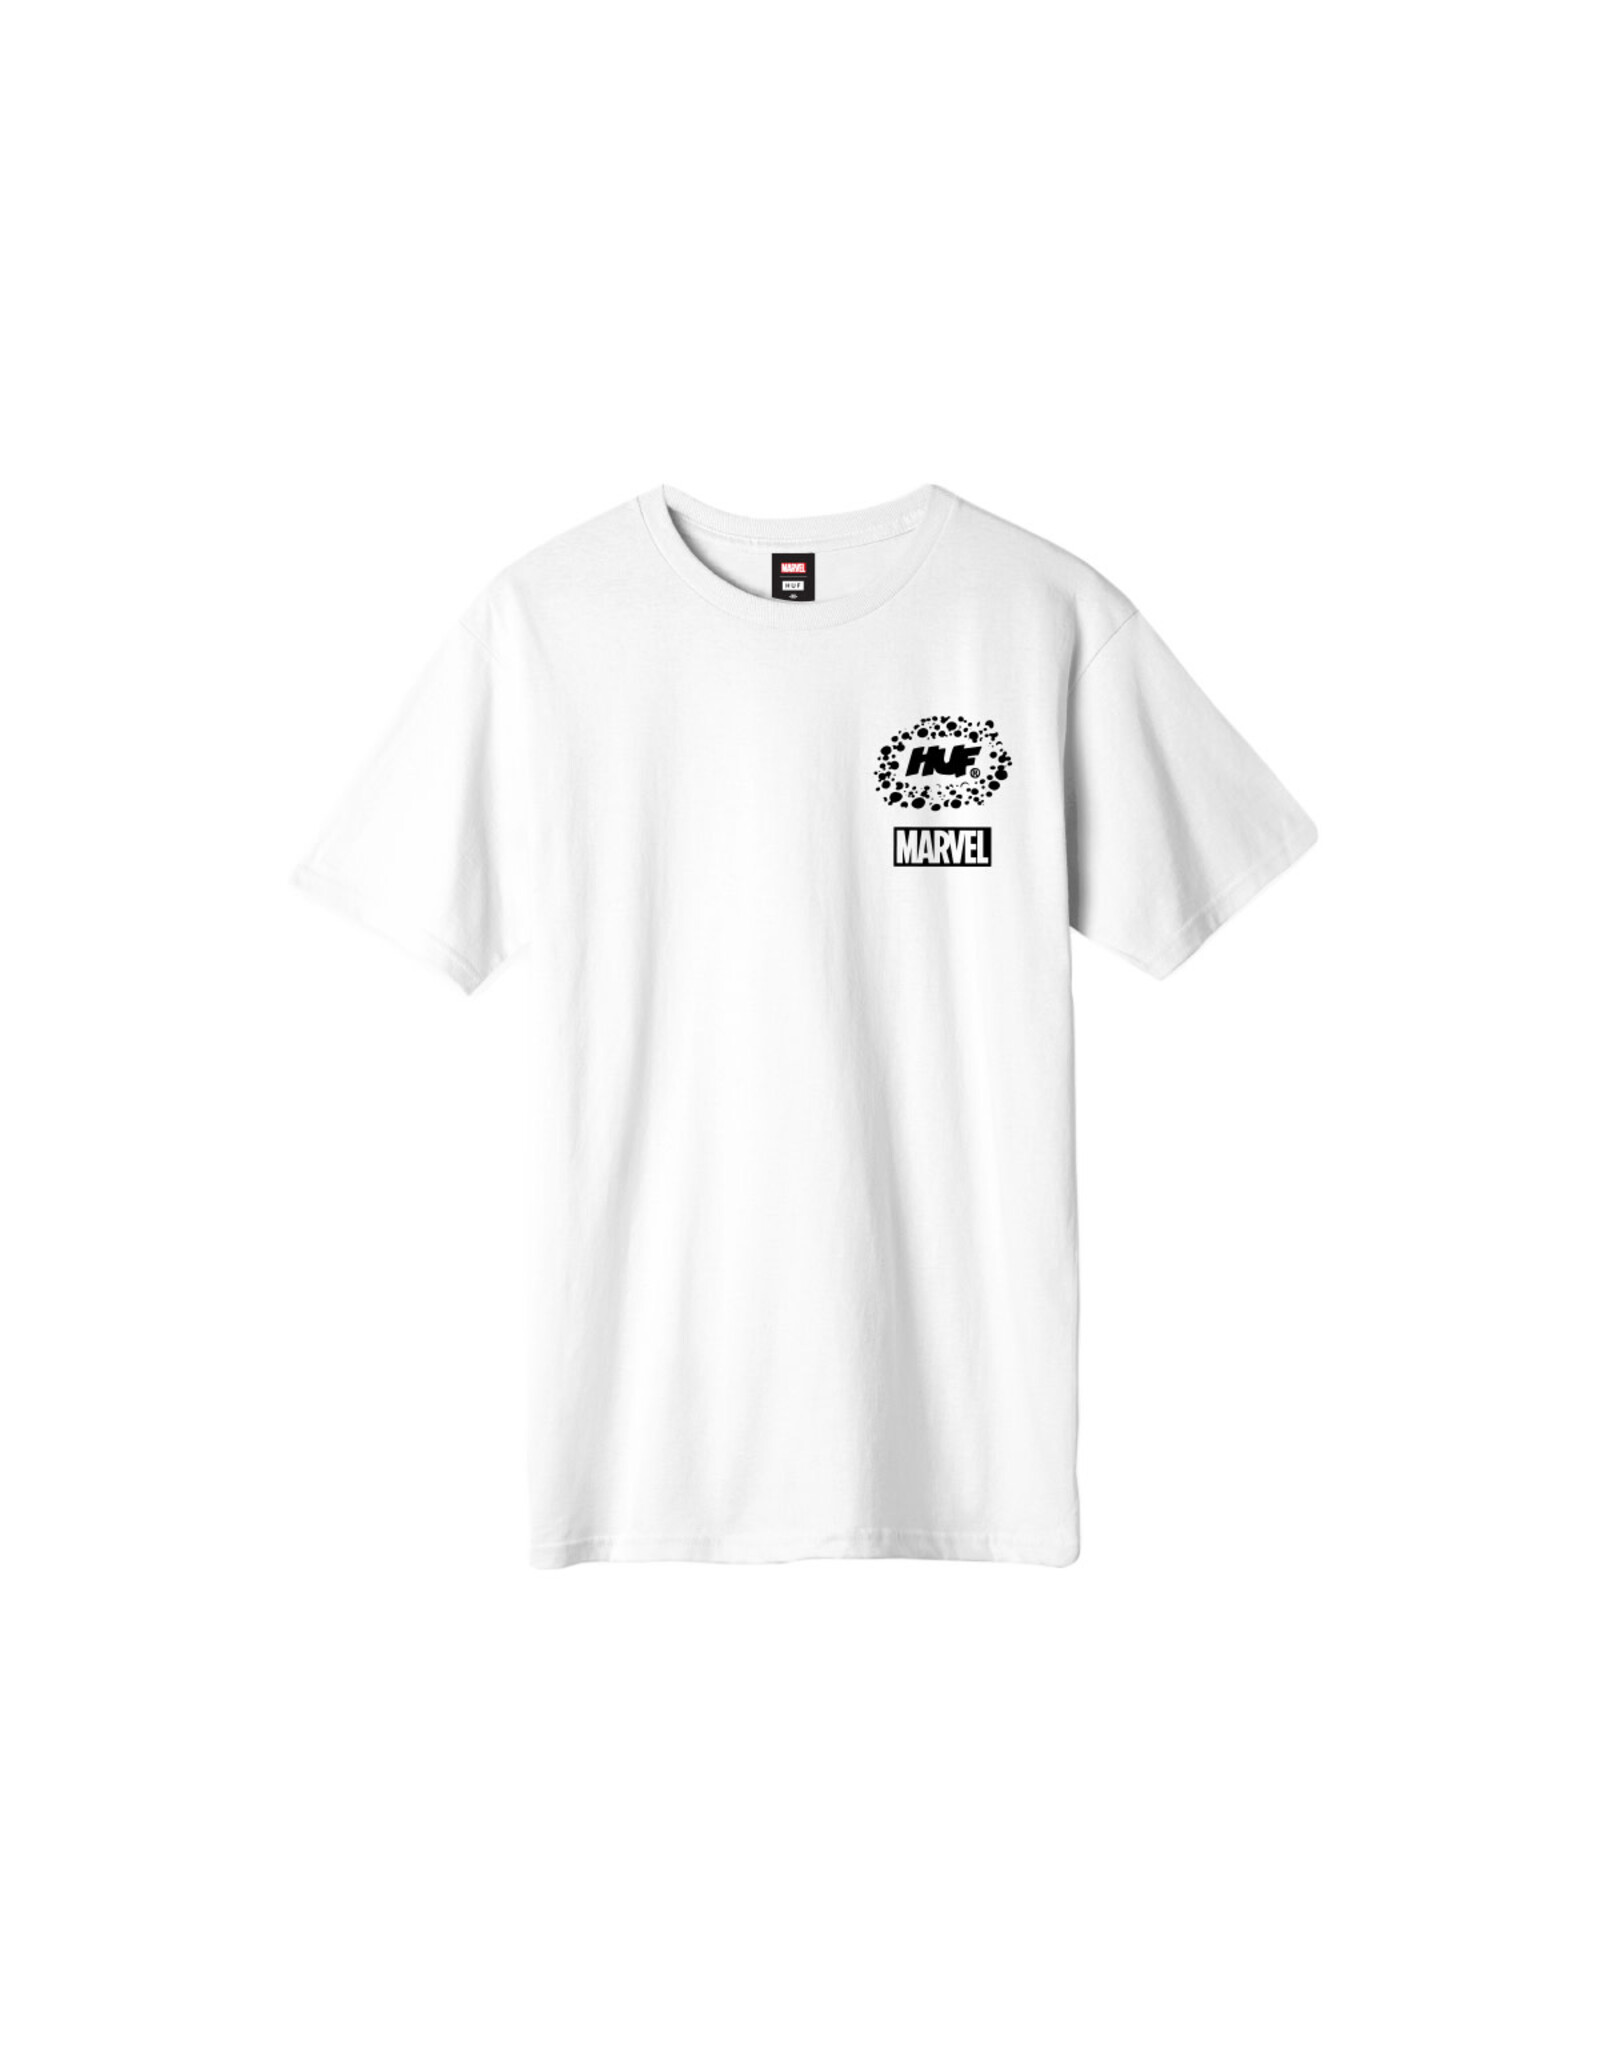 HUF Worldwide S/S Galactic Tee Shirt